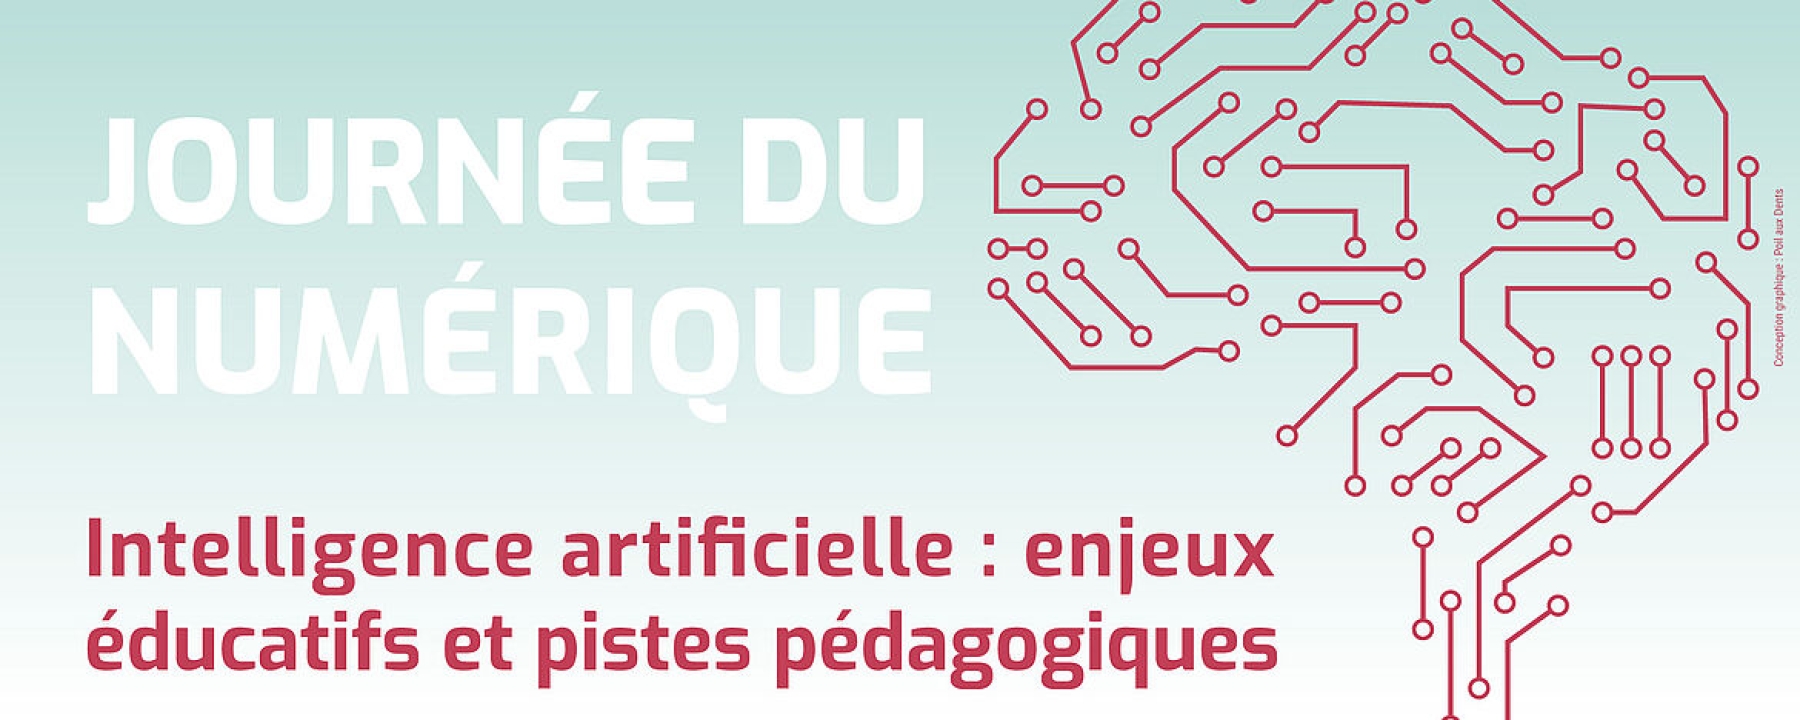 Journée du Numérique : Explorons les enjeux éducatifs de l’Intelligence Artificielle